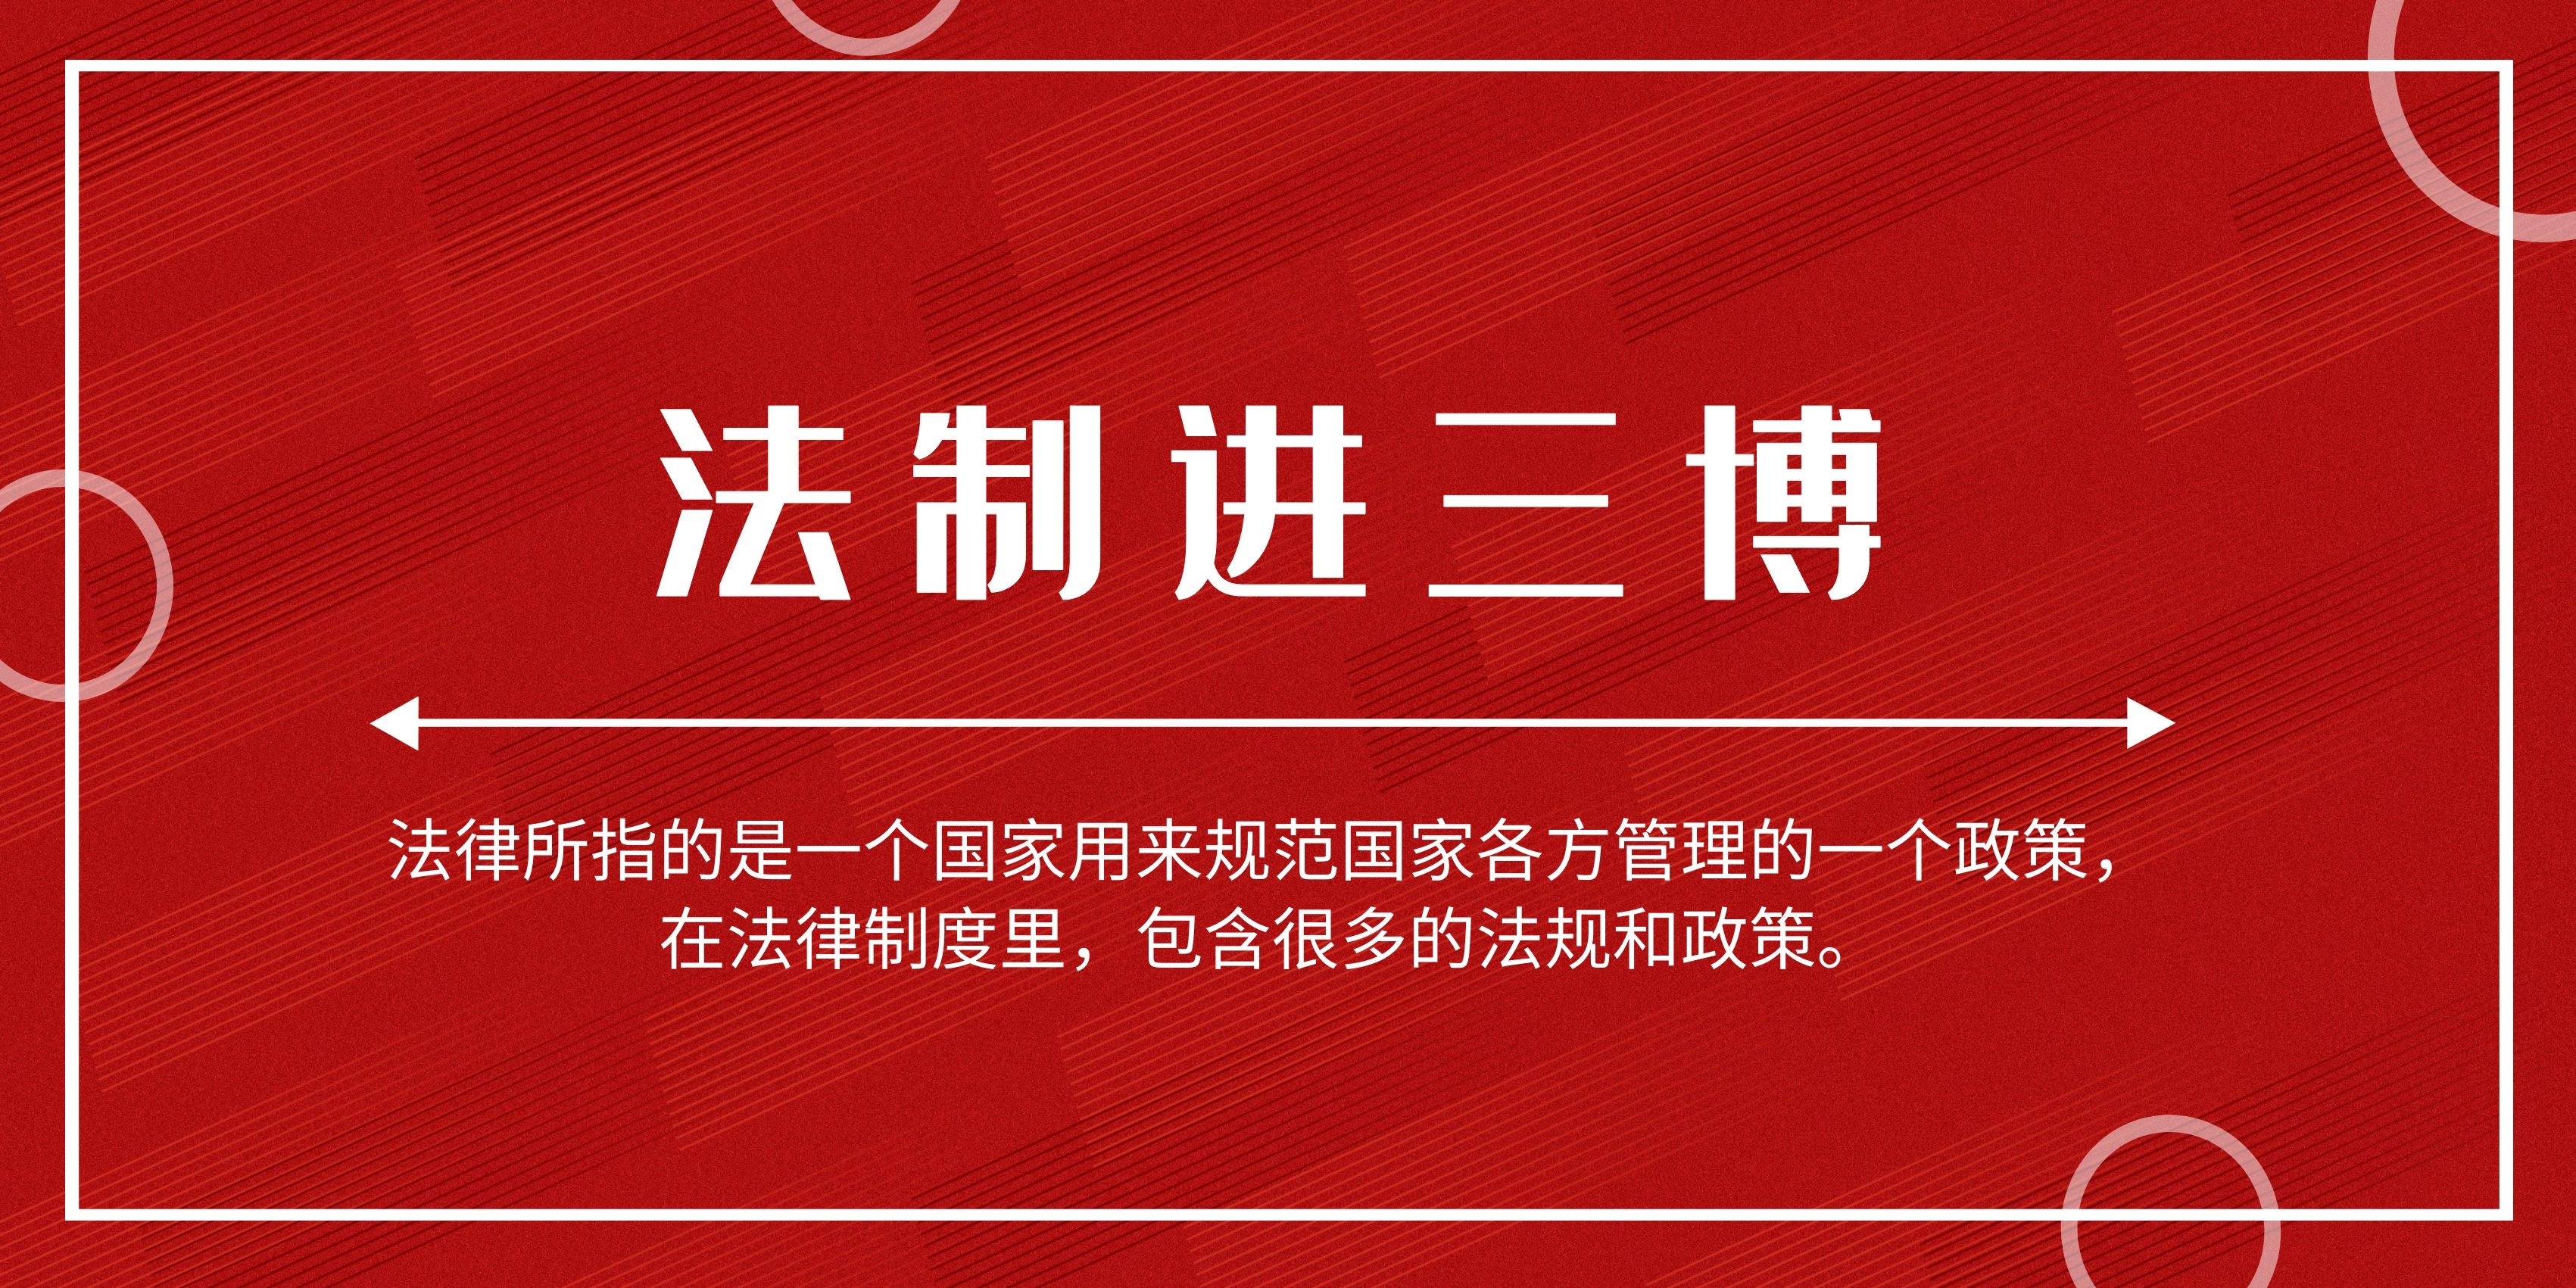 三明市博物馆2019年法制宣传教育年度工作计划